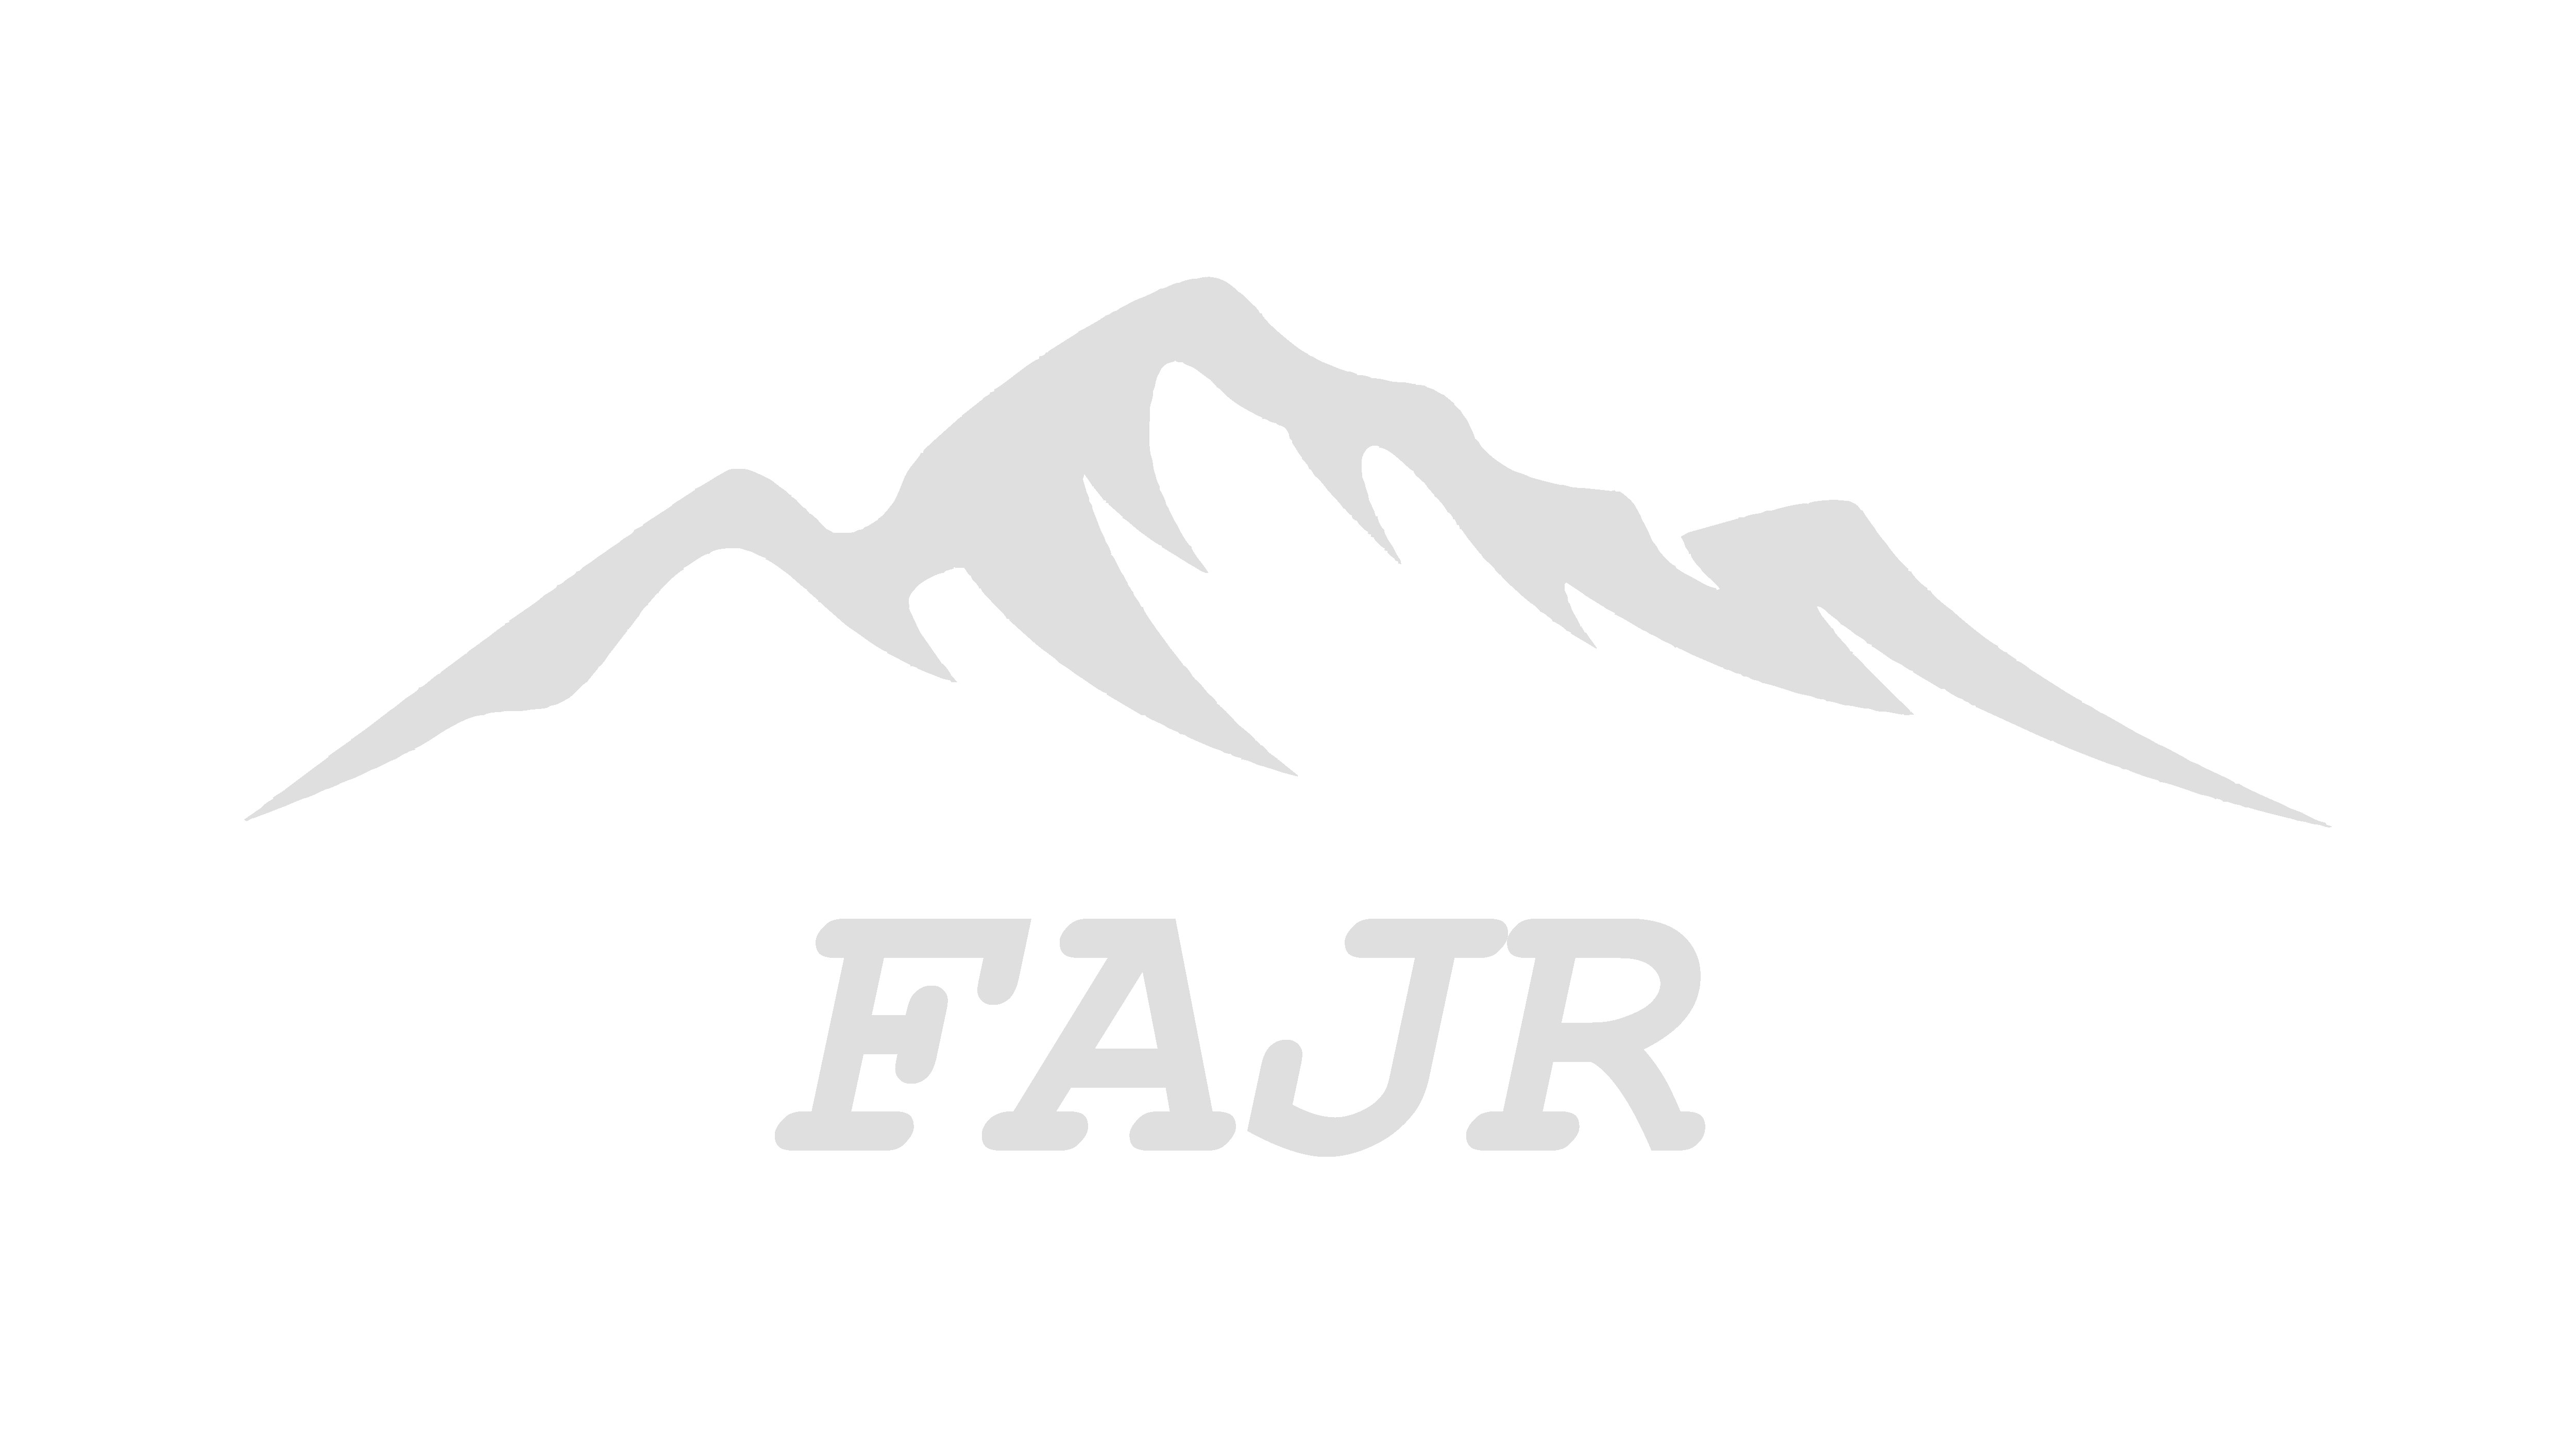 Fajr logo